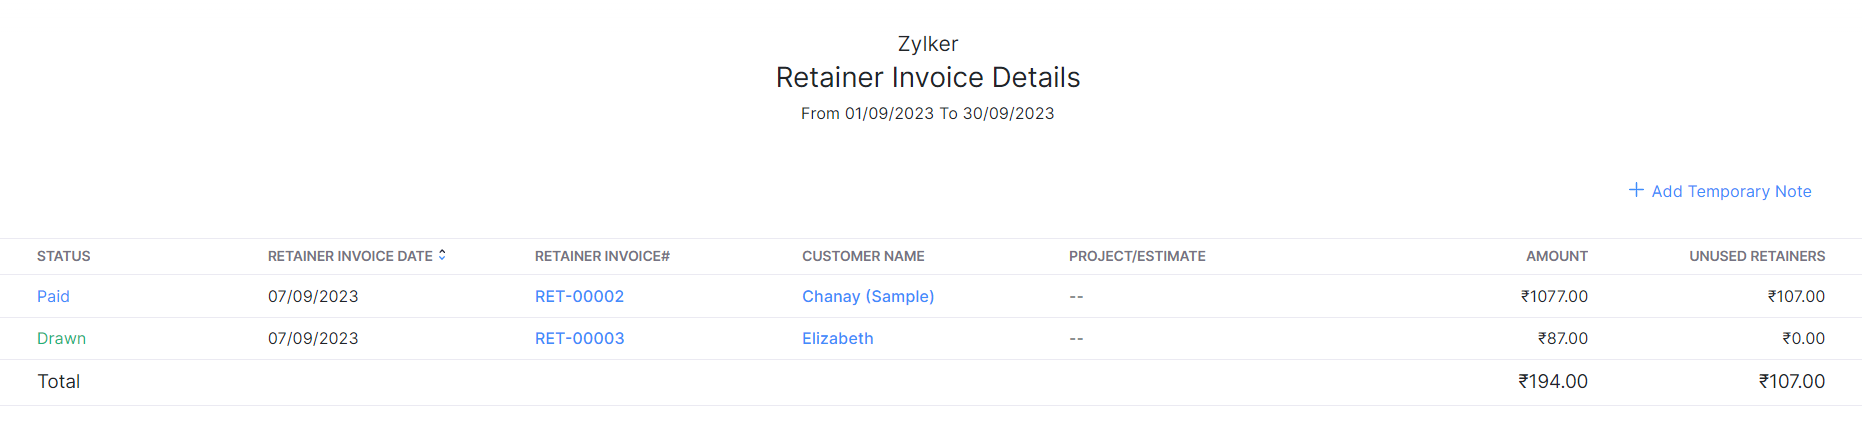 Retainer Invoice Details